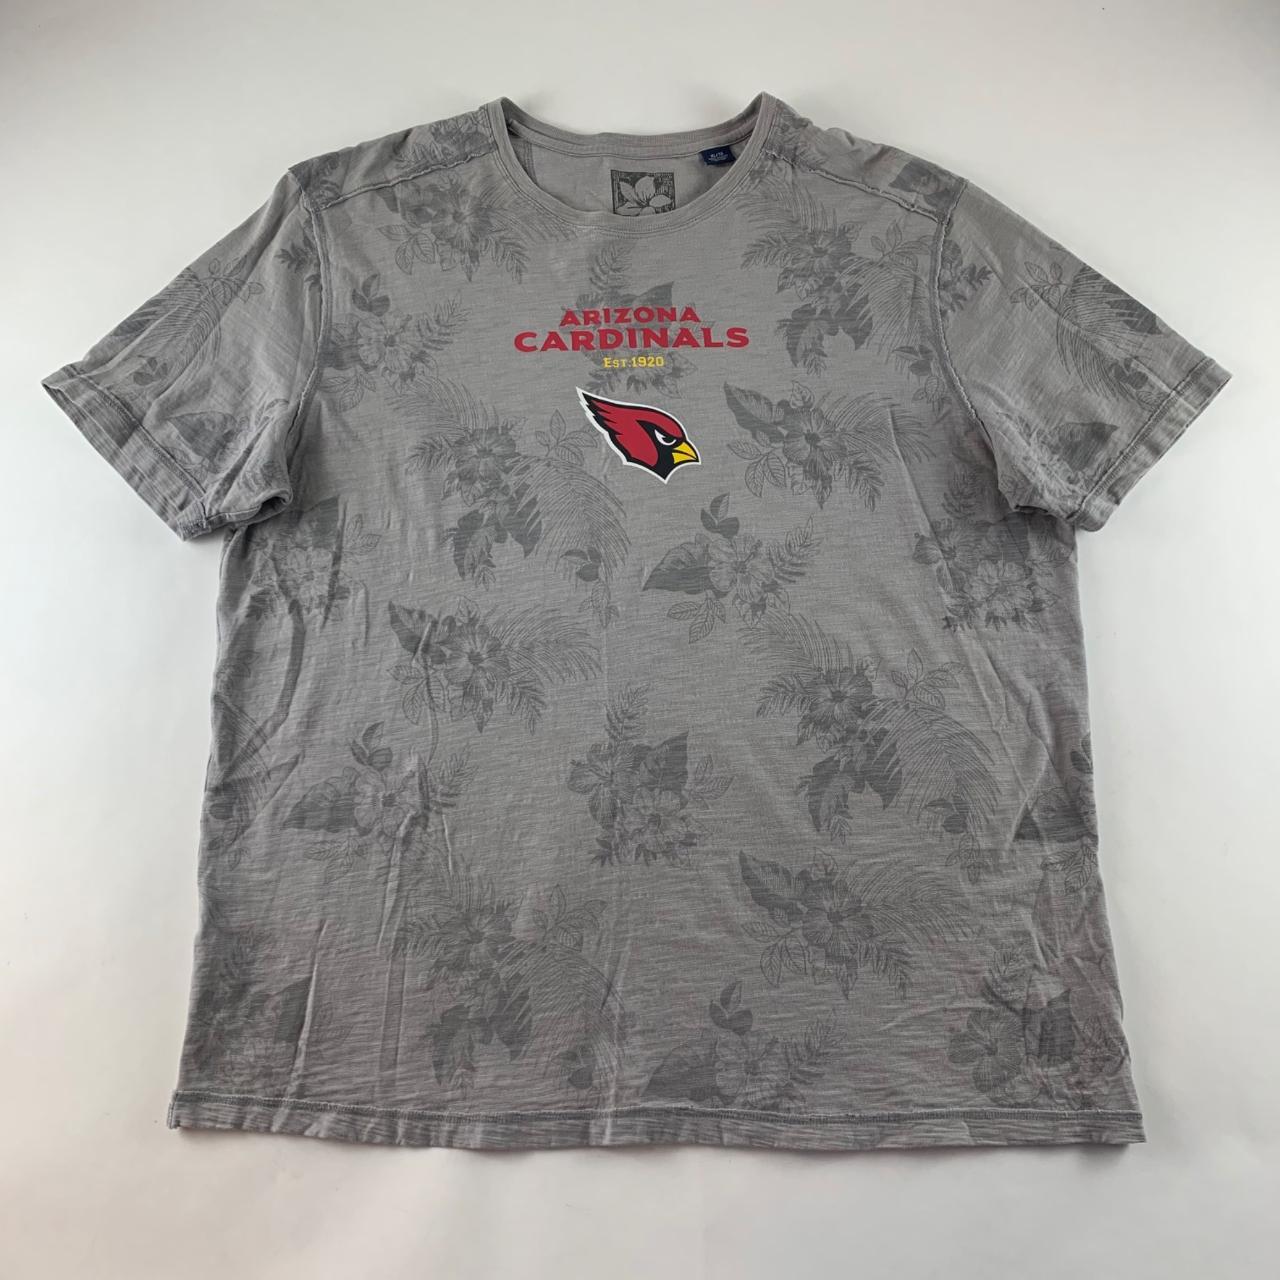 For Sale: Item Name: Arizona Cardinals NFL Tommy - Depop